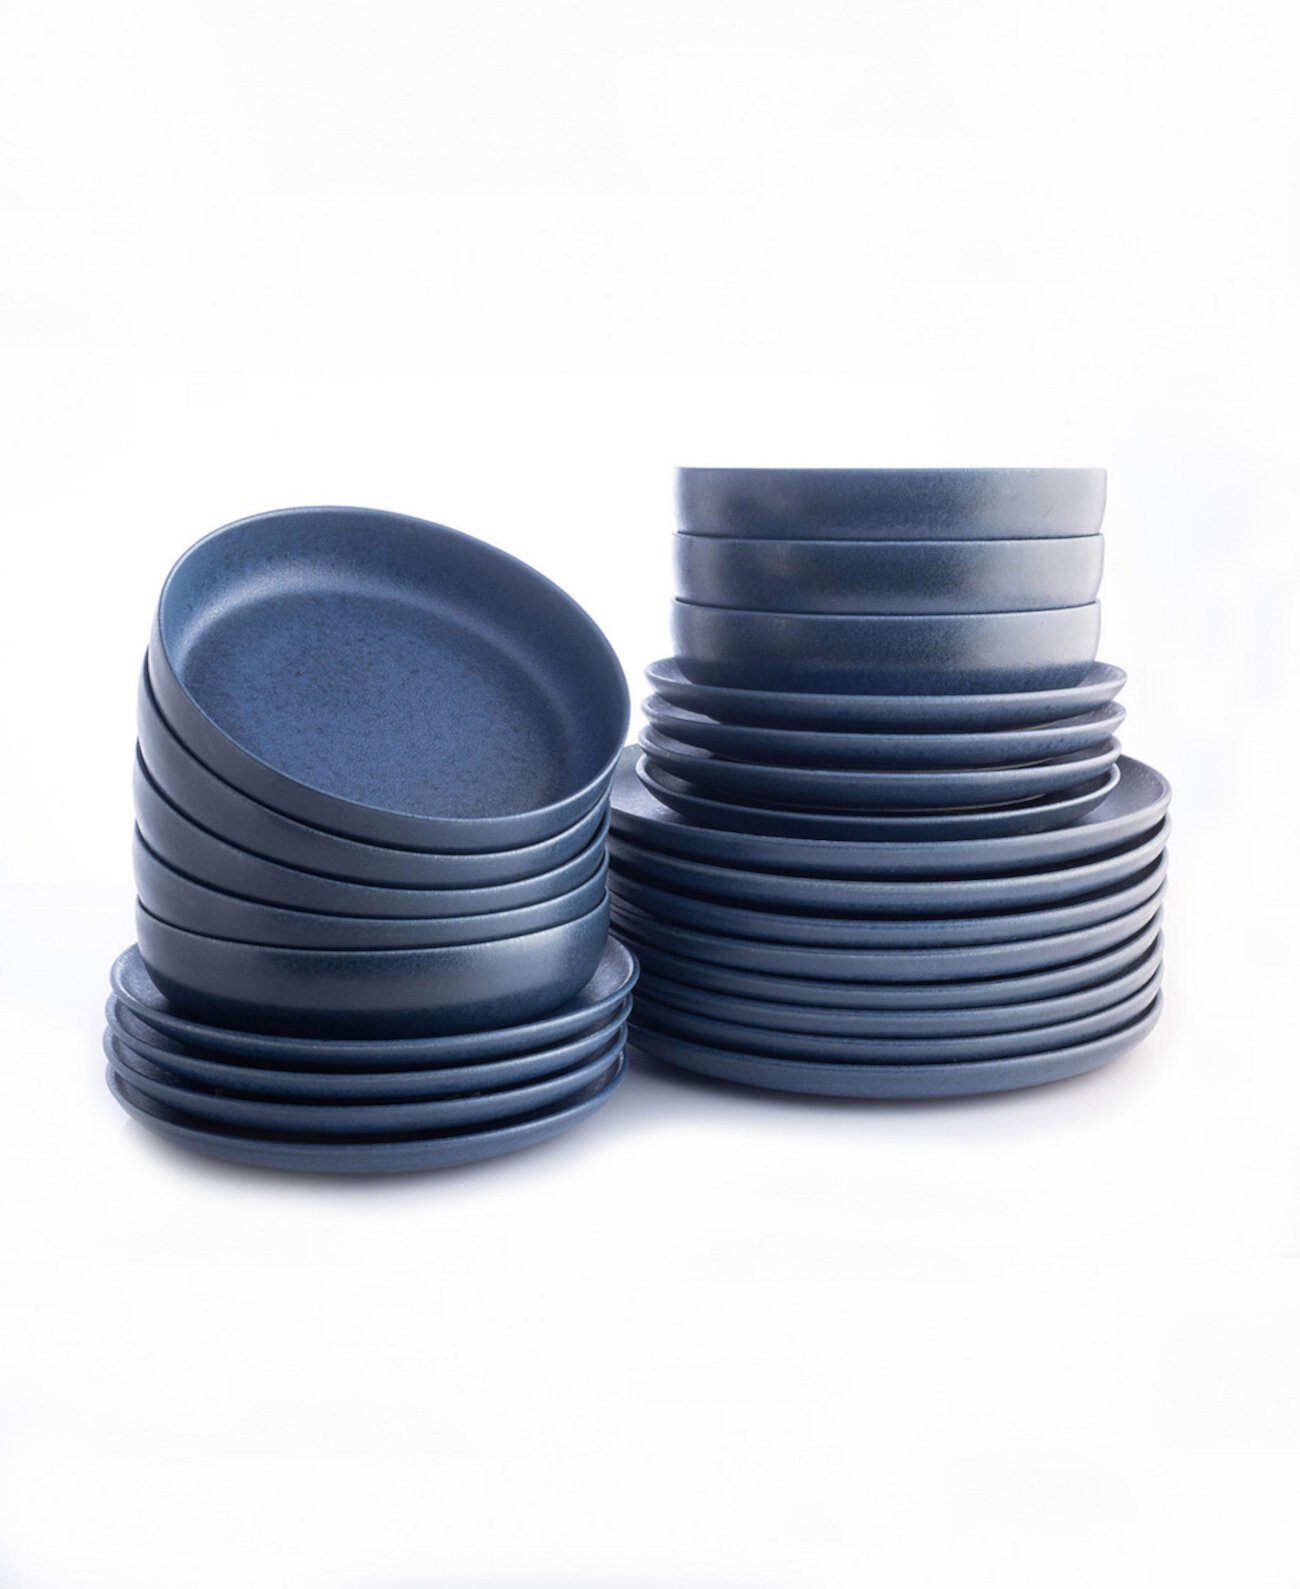 Полный набор столовой посуды Porto by Macchio из керамики, 24 предмета, сервиз на 8 персон Stone Lain